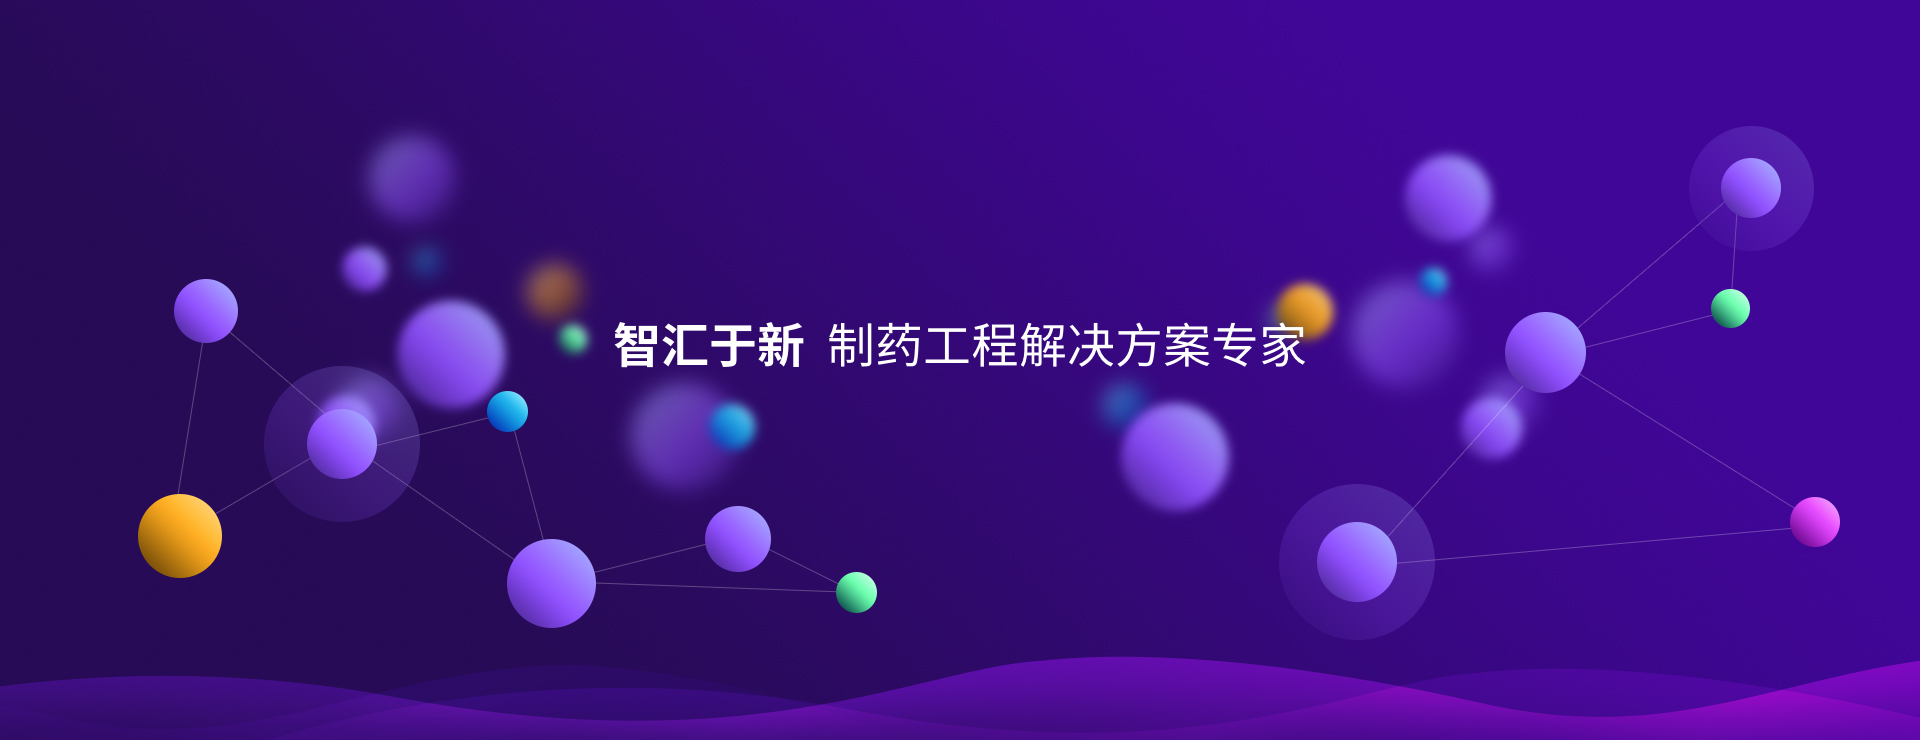 关于当前产品178众发-178众发app下载·(中国)官方网站的成功案例等相关图片